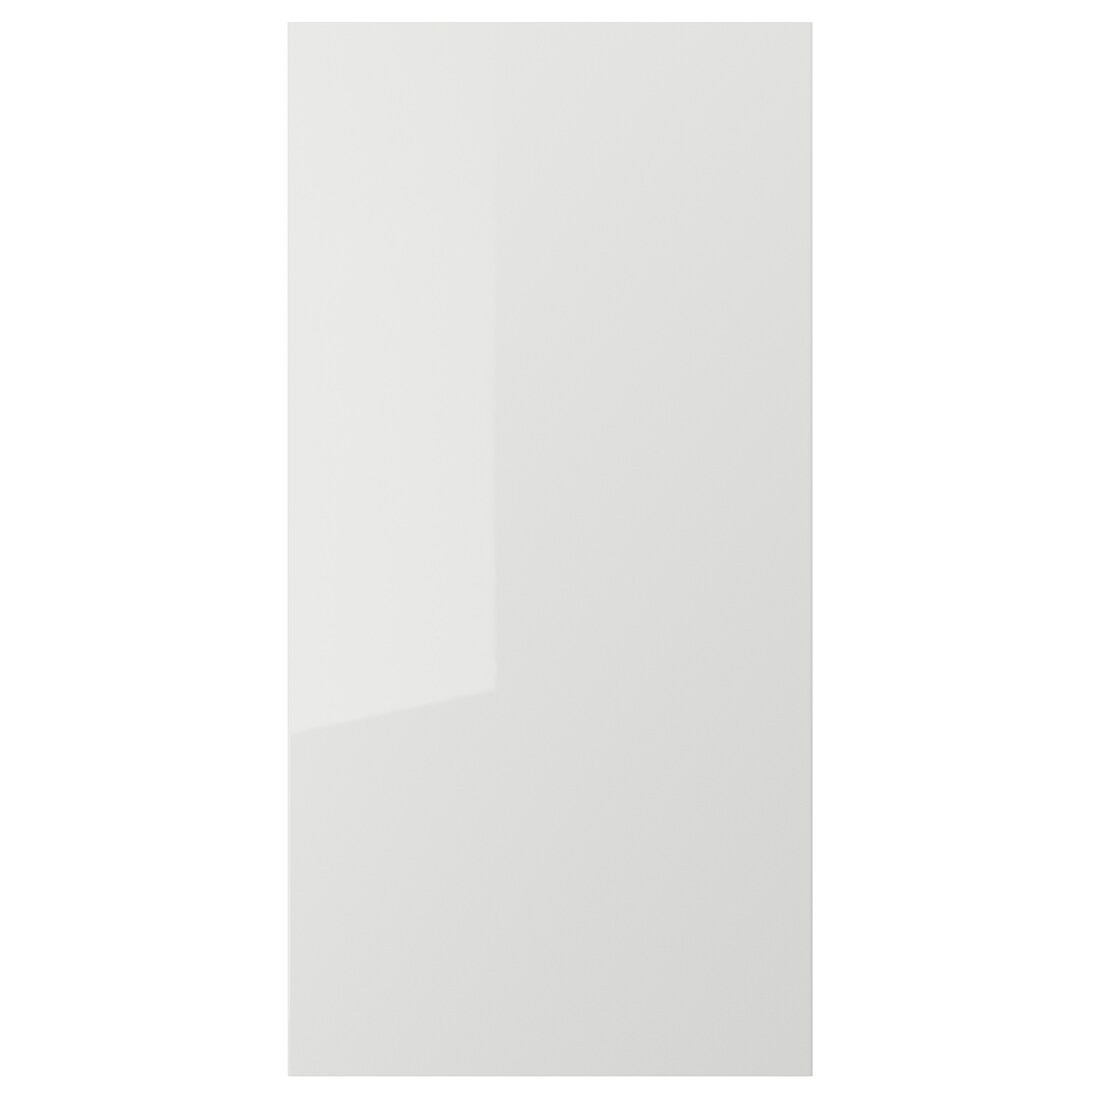 RINGHULT РІНГХУЛЬТ Двері, глянцевий світло-сірий, 60x120 см